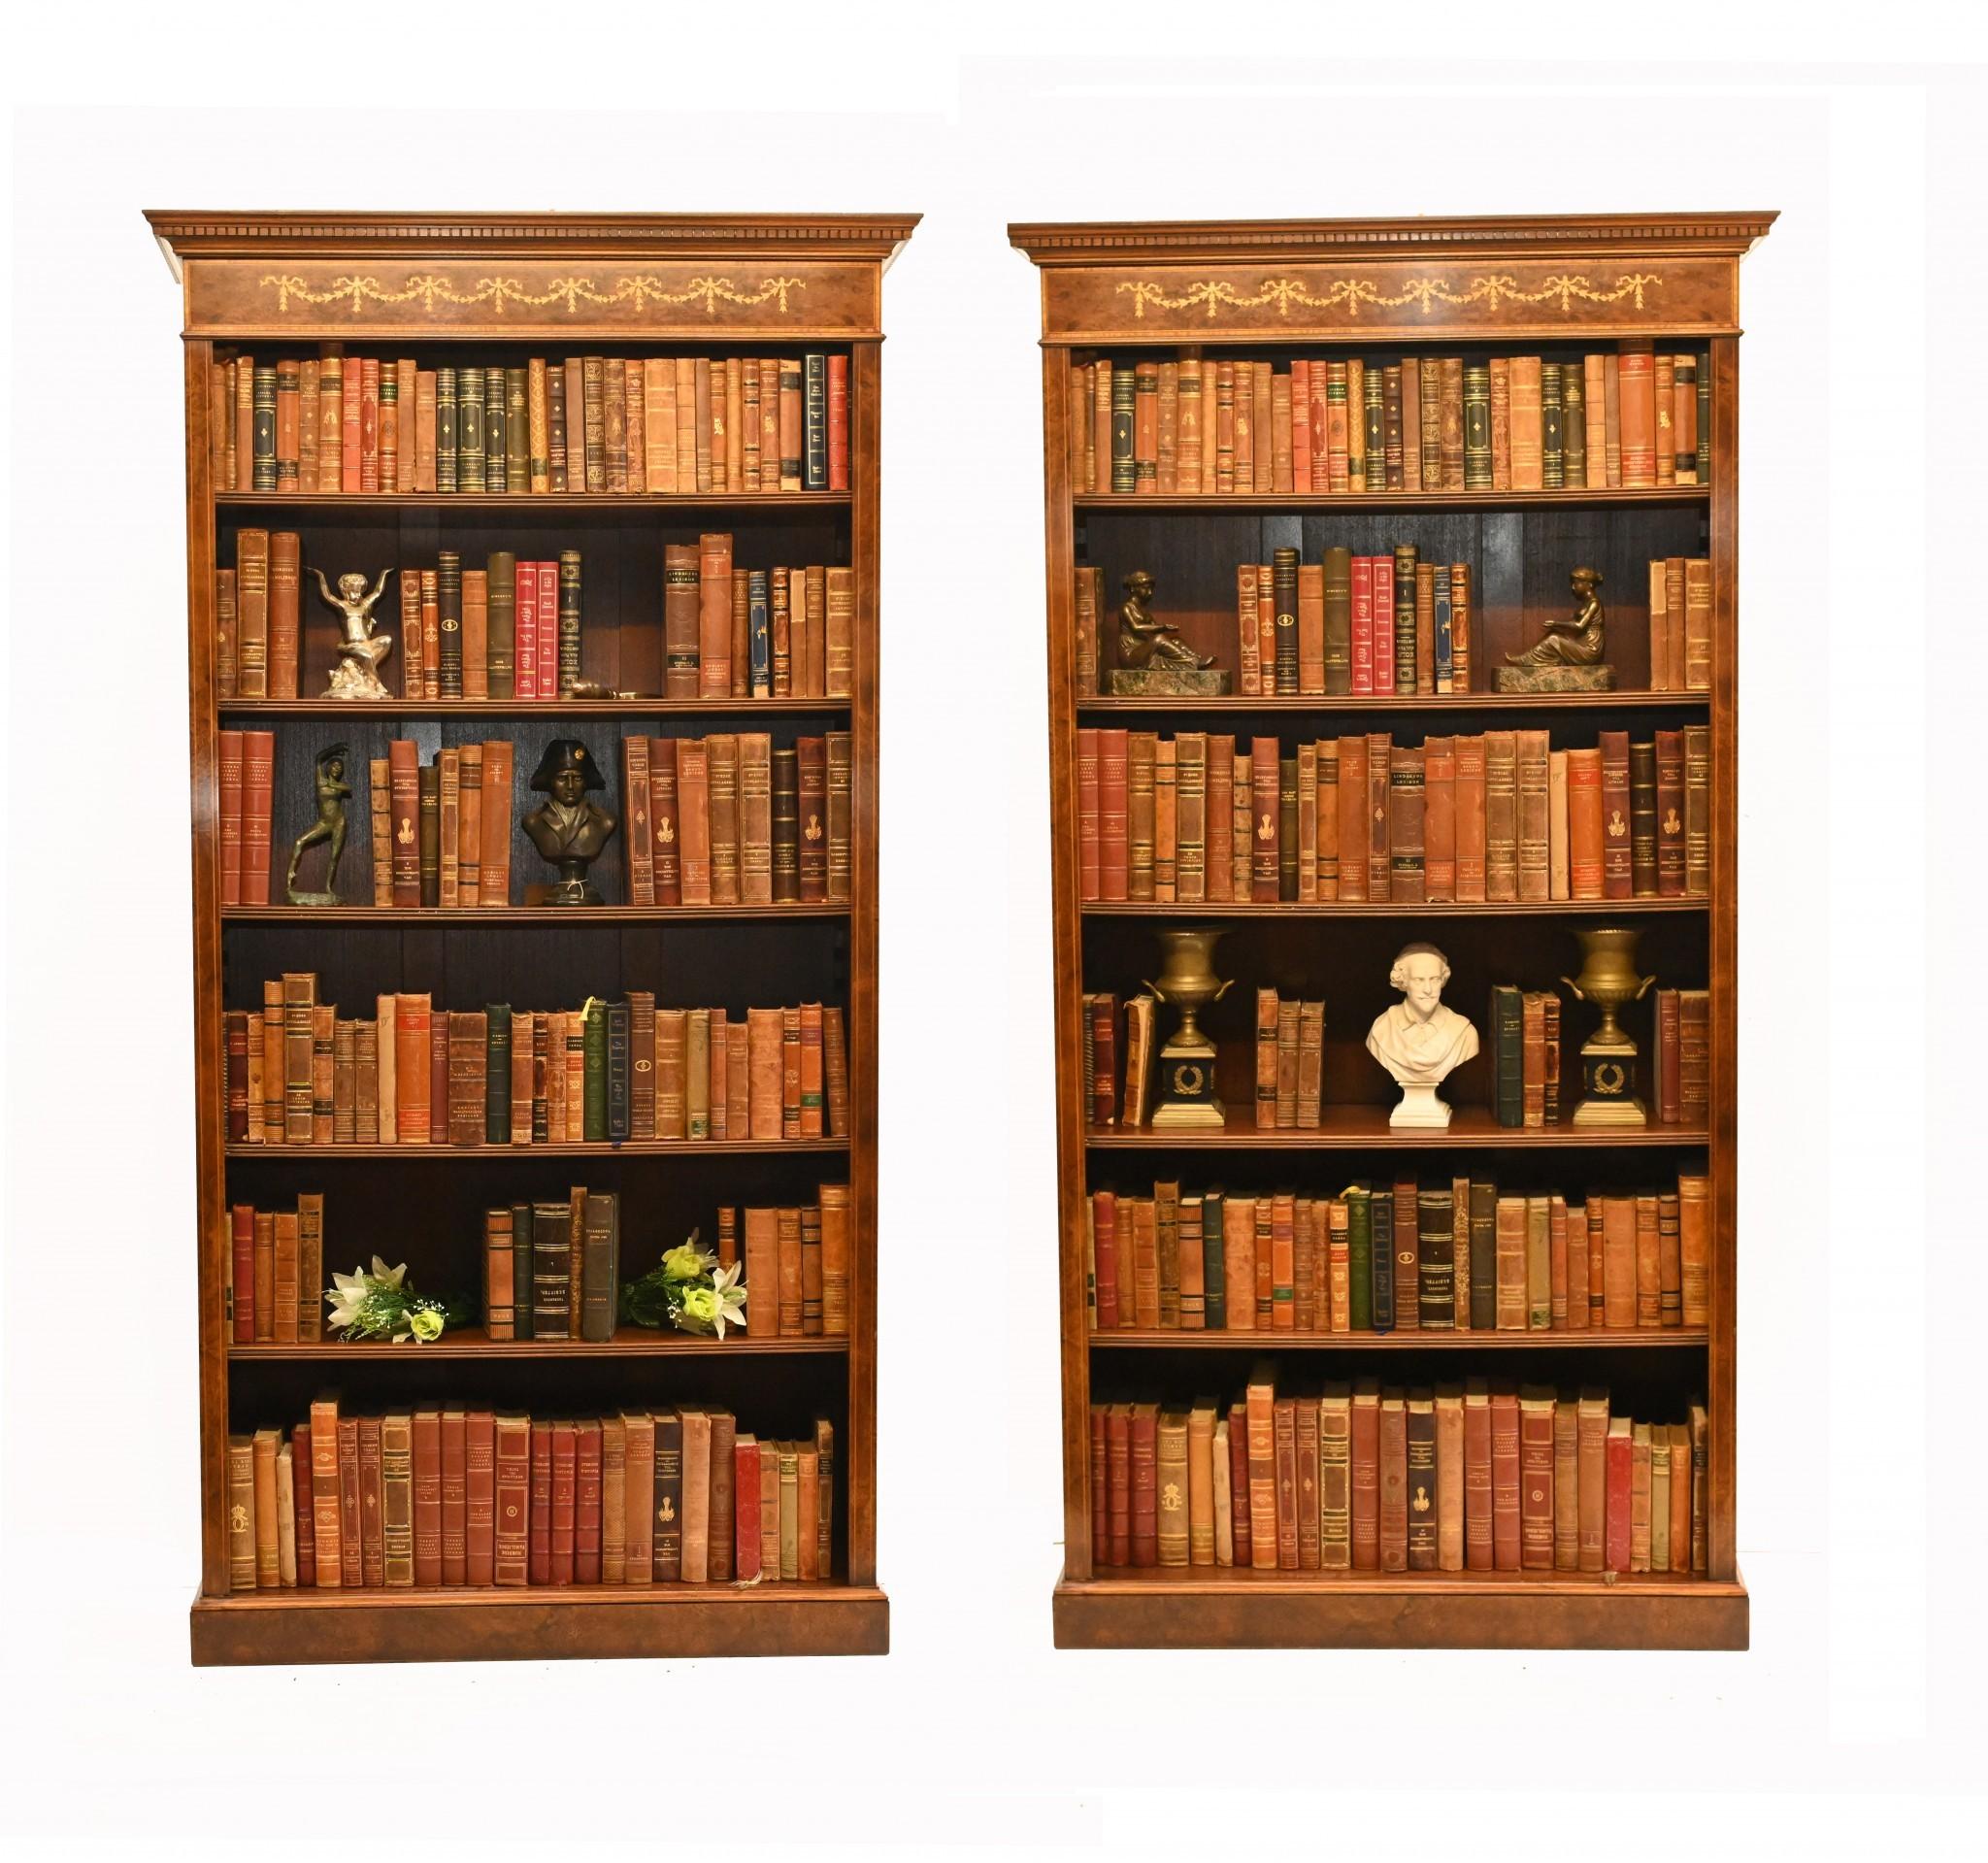 Sie sehen hier ein Paar offener Bücherregale im englischen Sheraton-Stil, handgefertigt aus feinstem Nussbaum. Dieses hübsche Paar ist die perfekte Mischung aus dekorativer Schönheit und praktischer Funktionalität und damit ein Klassiker des